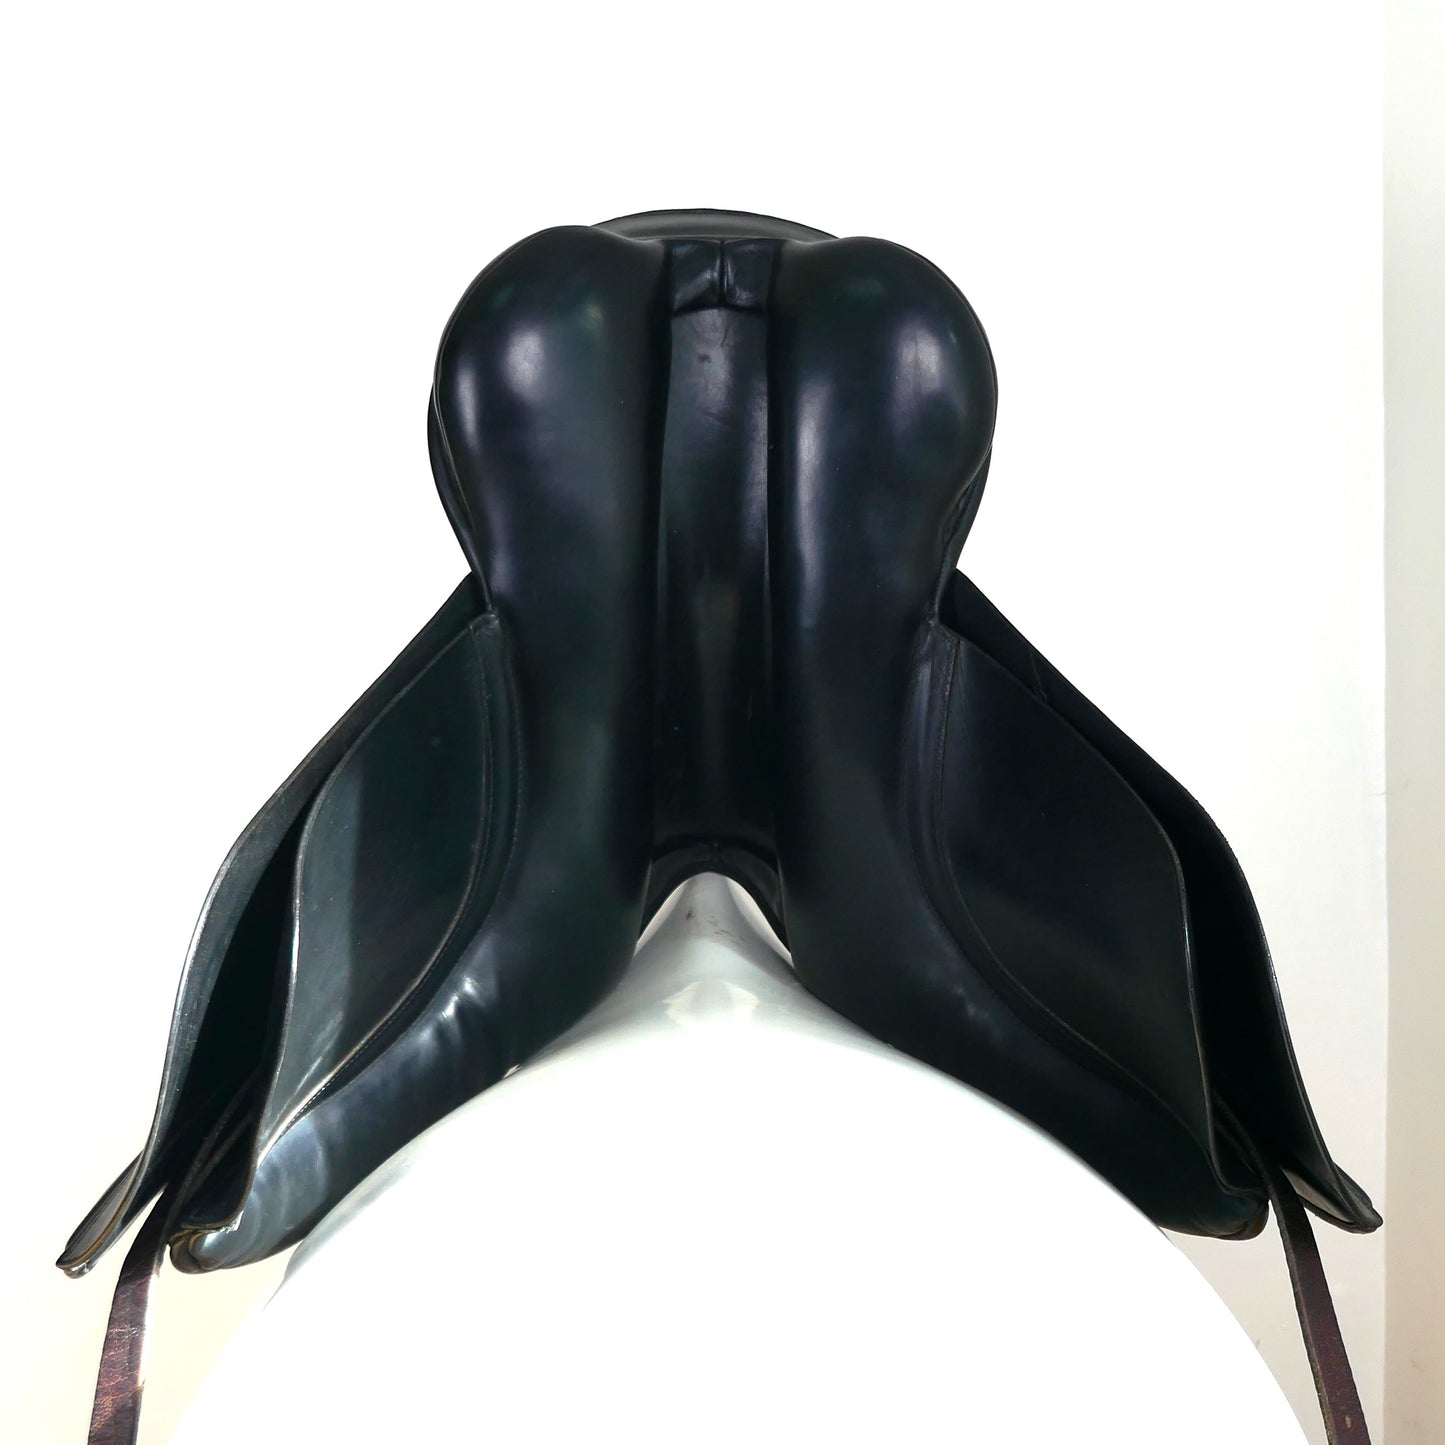 Ideal Jessica Dressage Saddle - 17.5" Medium Black TD102